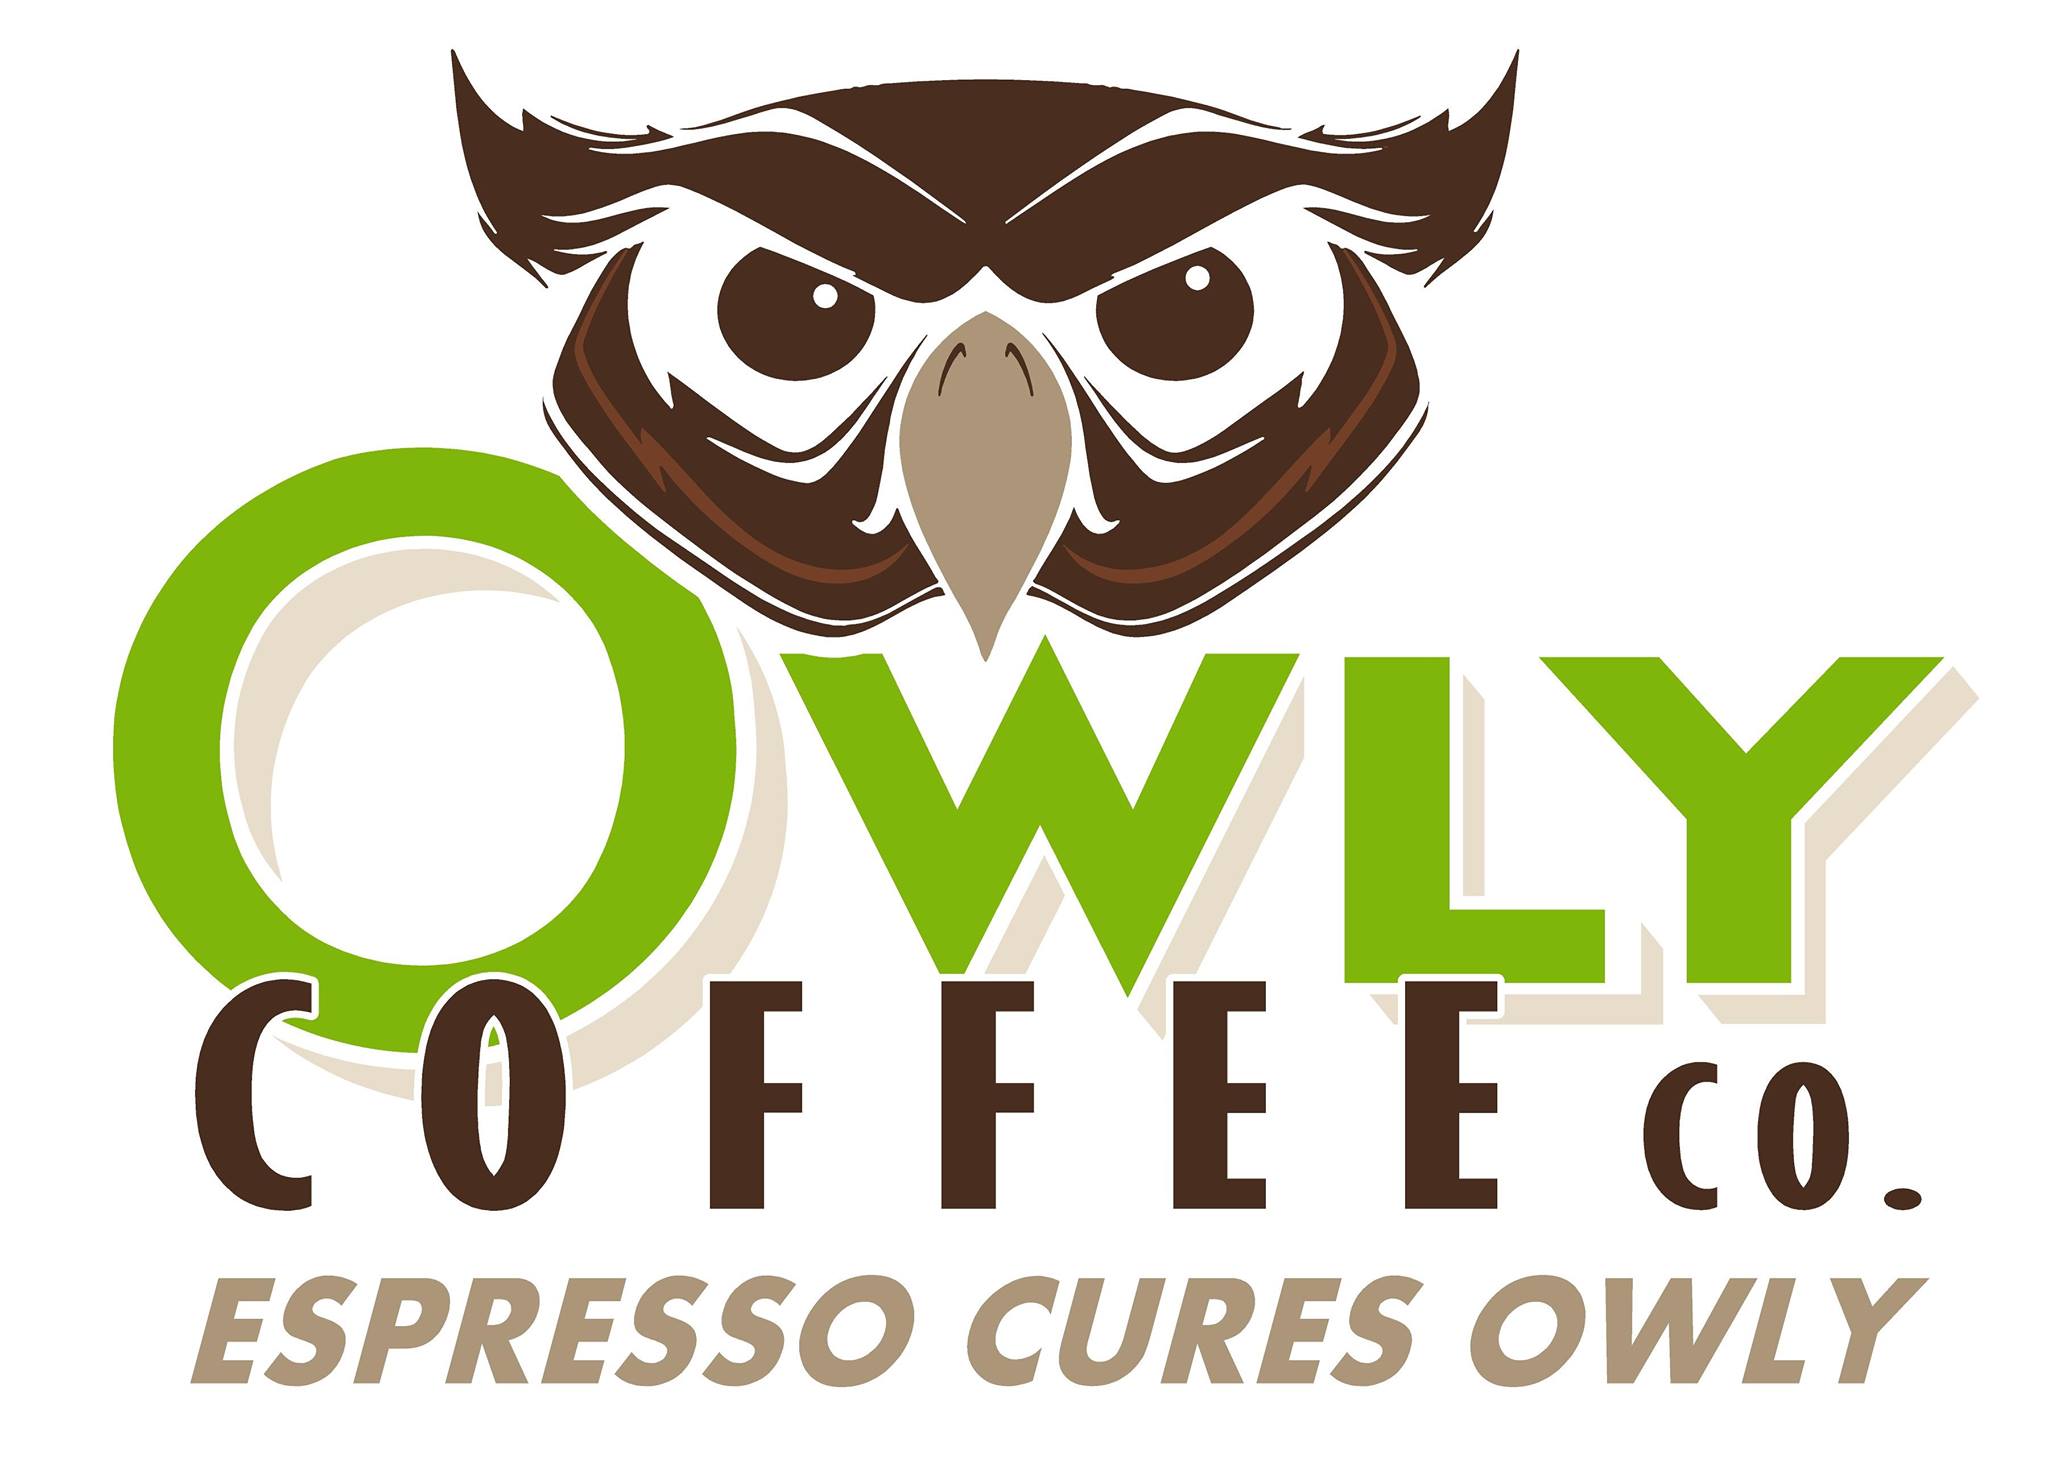 Owly Coffee Co